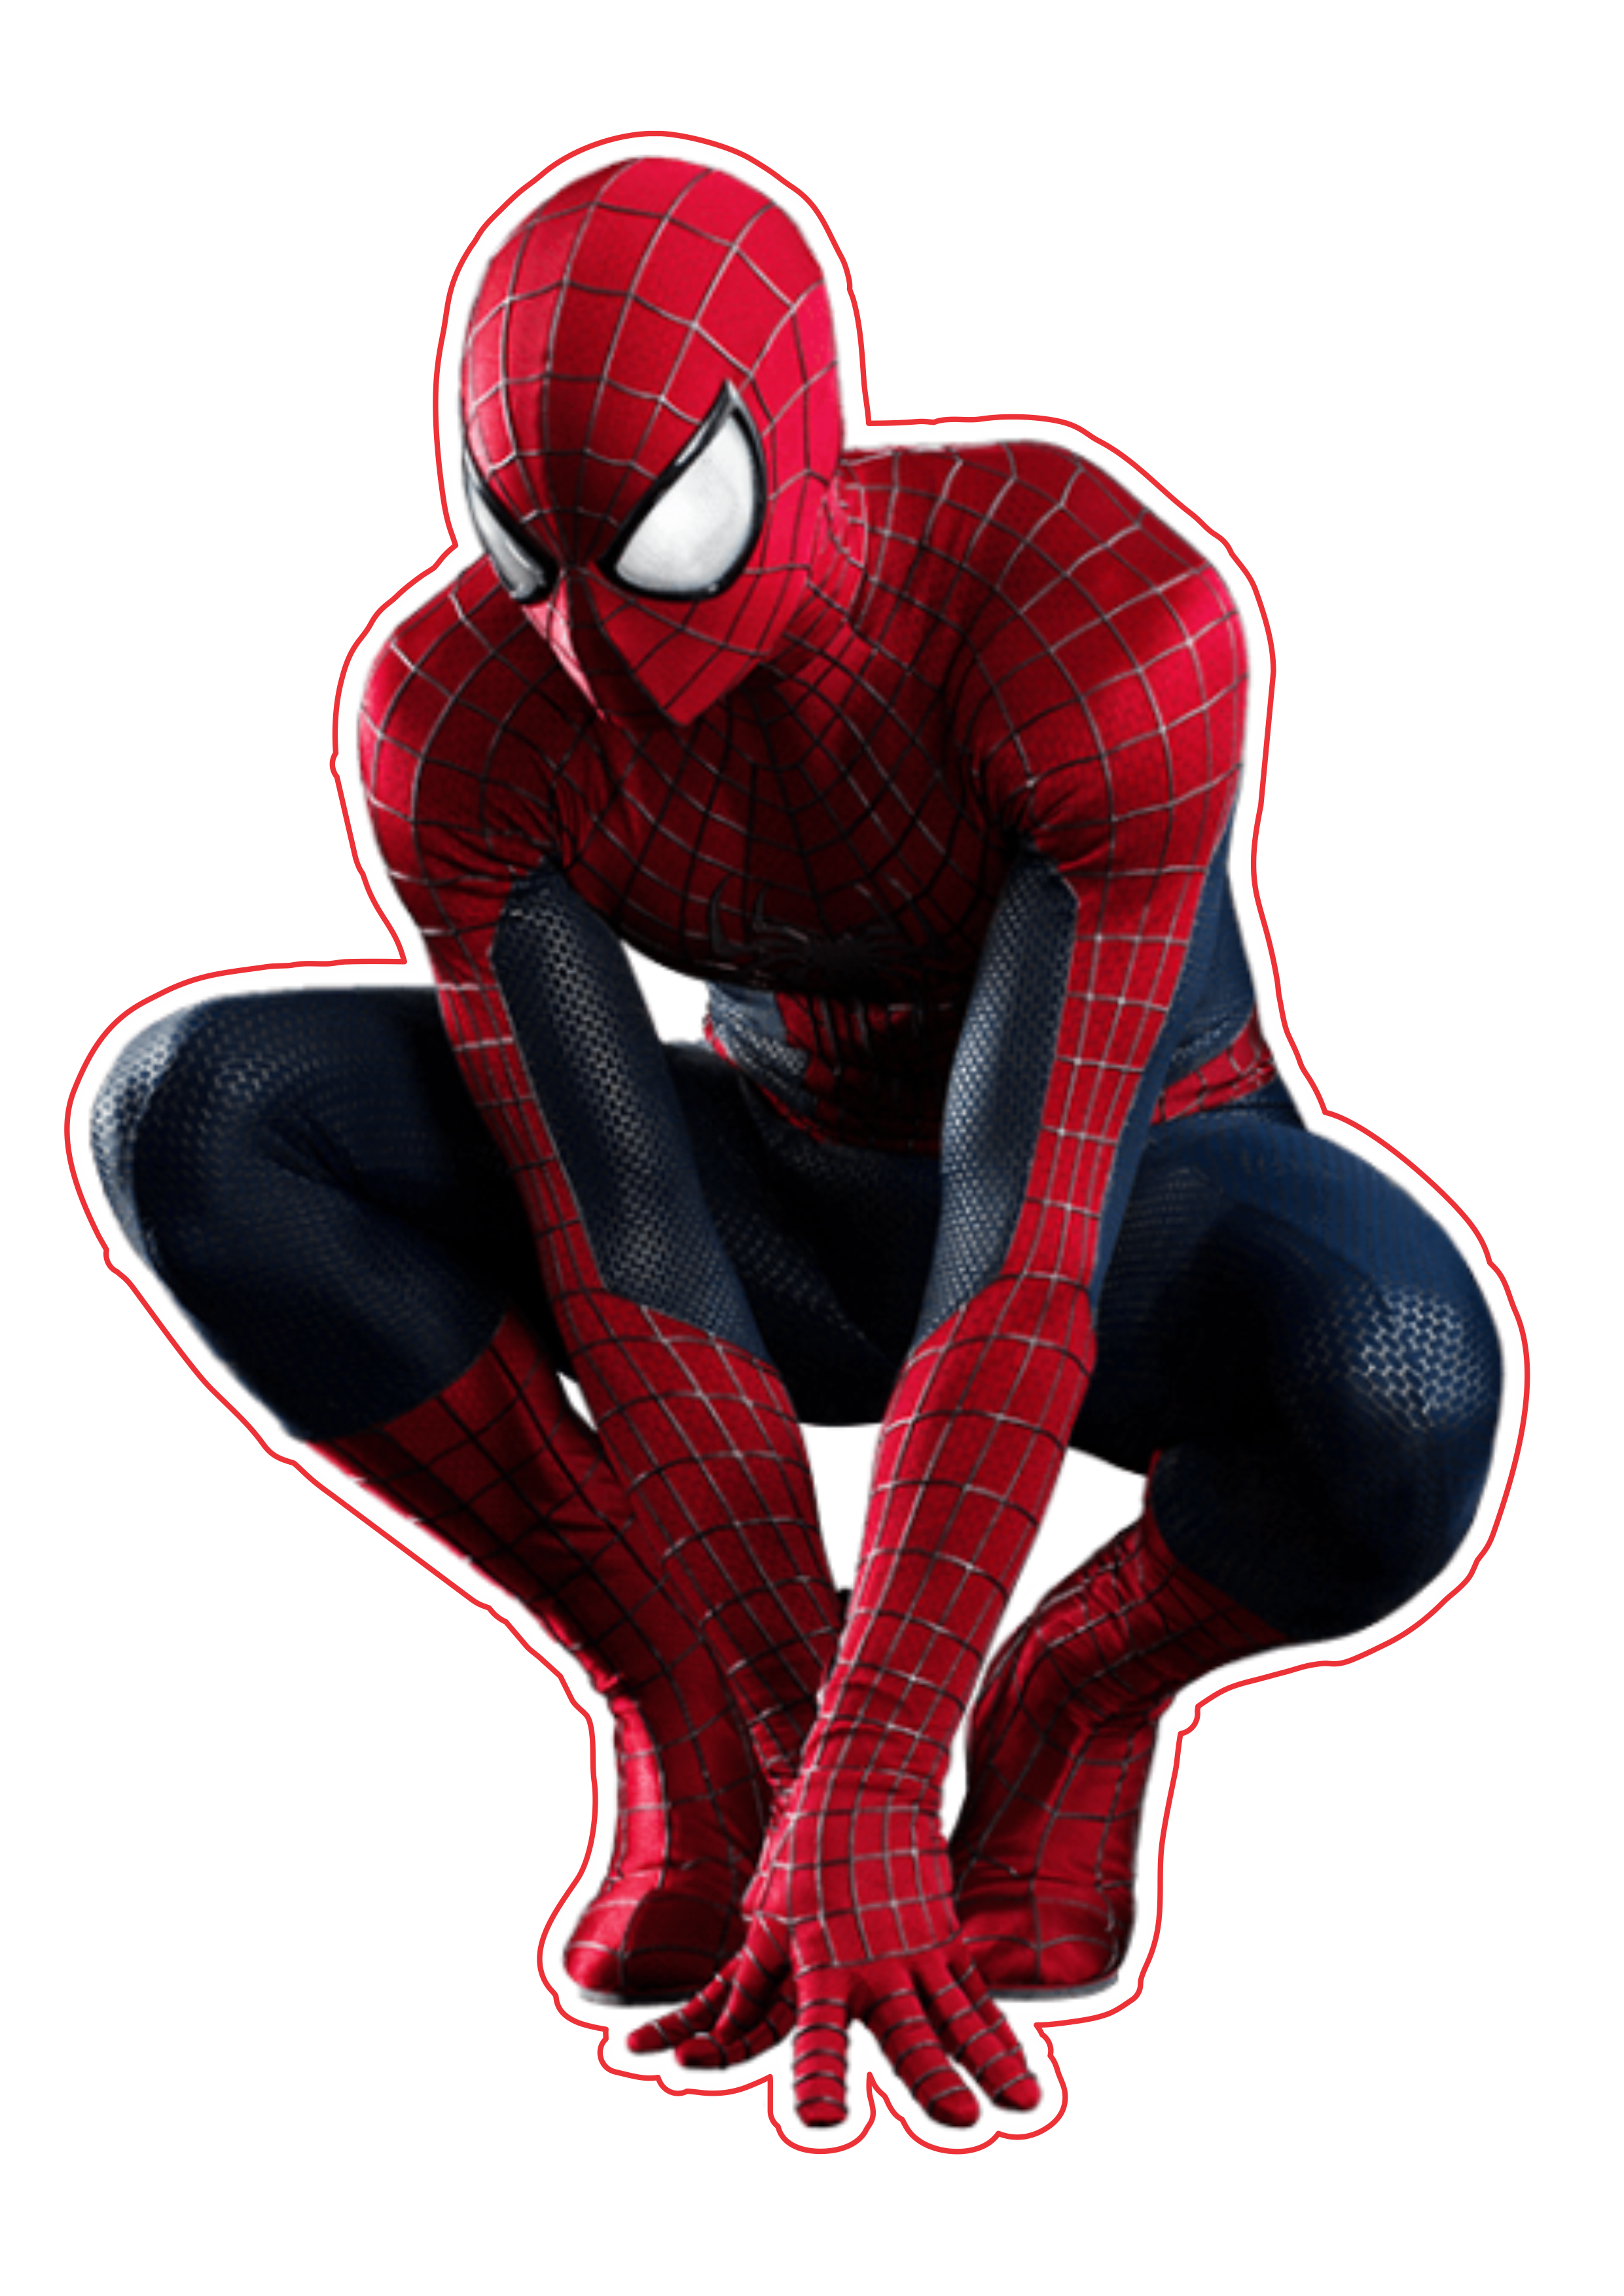 Homem aranha filme clássico imagem fundo transparente Marvel super heróis arte conceitual png